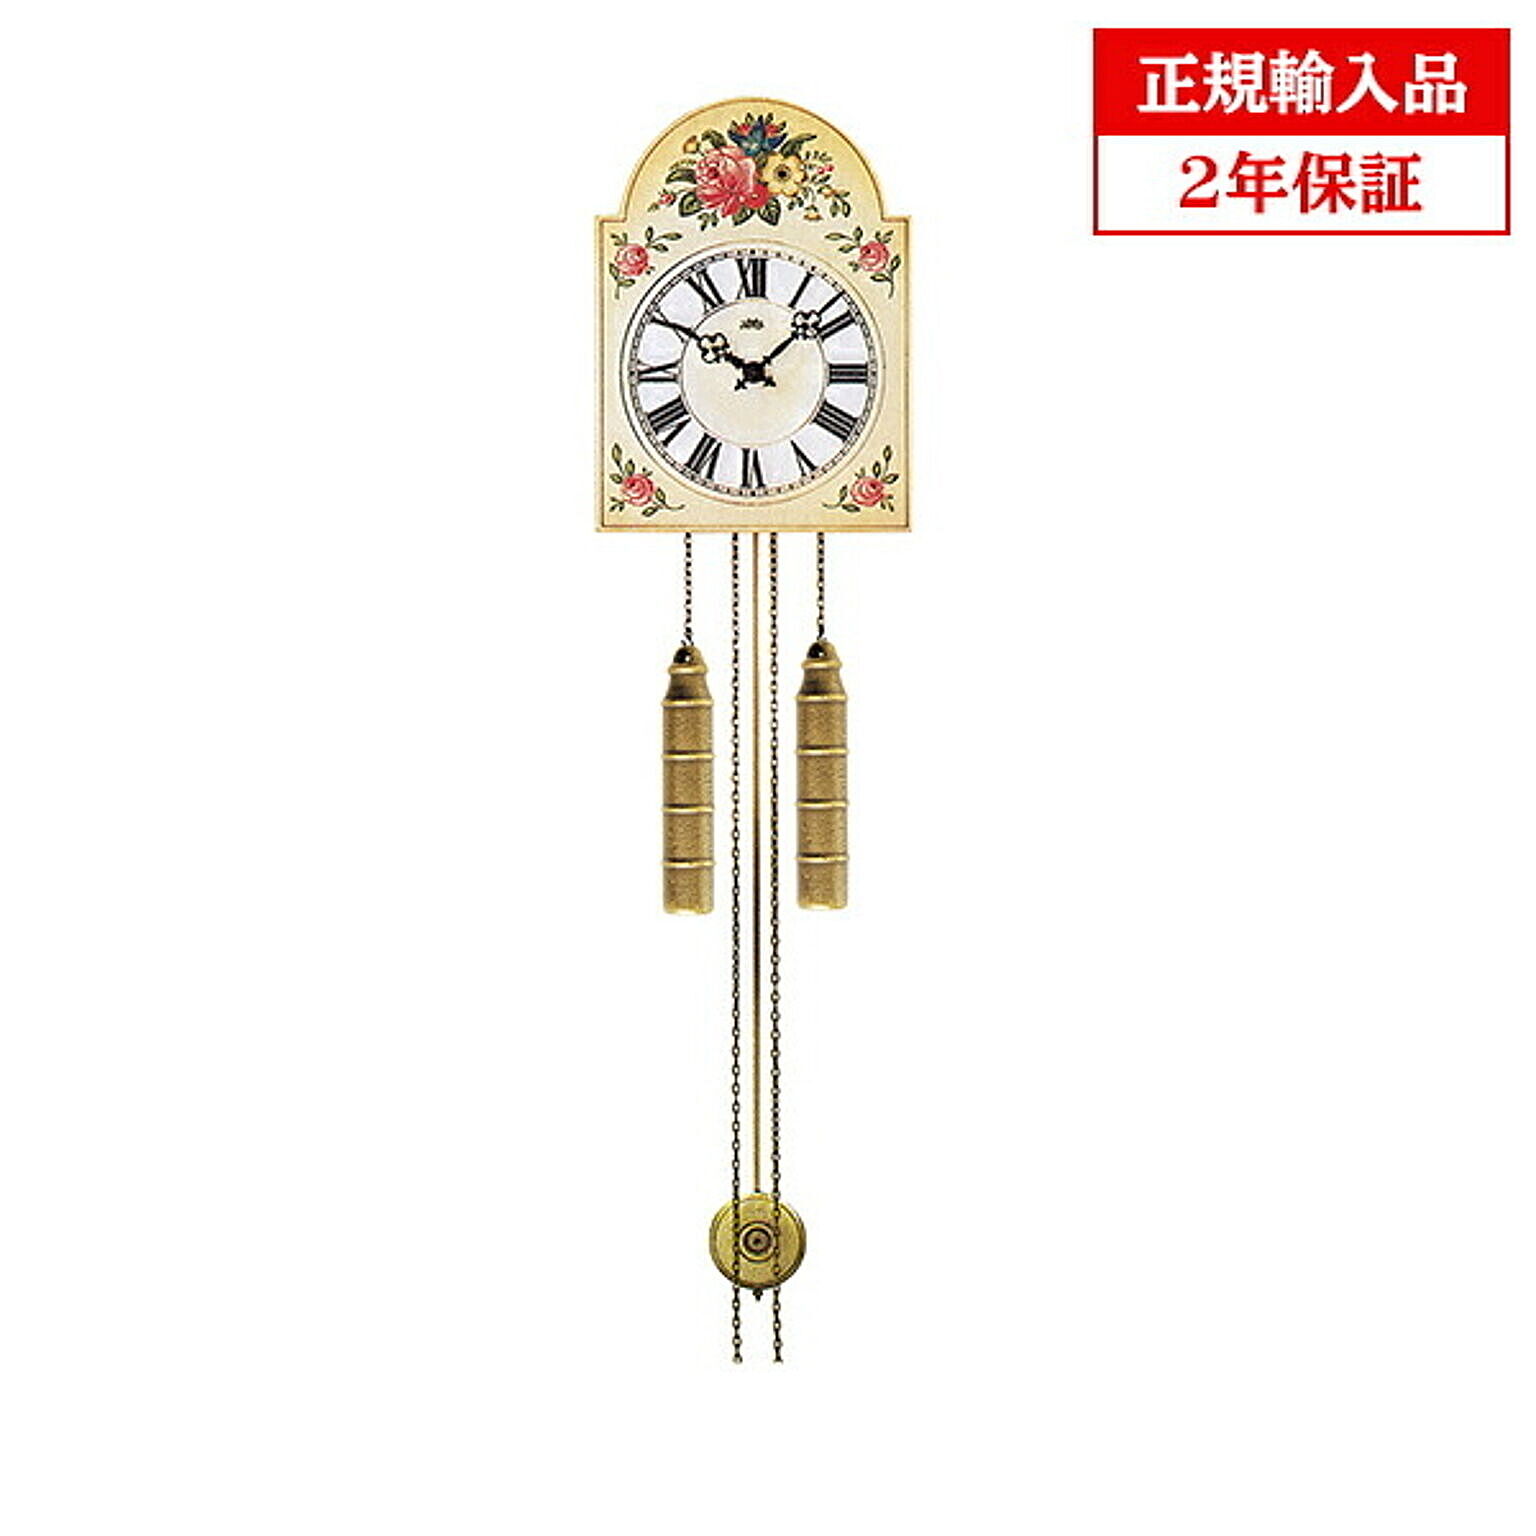 アームス社 AMS 835 機械式 掛け時計 (掛時計) ボンボン時計 アンティーク調花柄 ドイツ製 【正規輸入品】【メーカー保証2年】